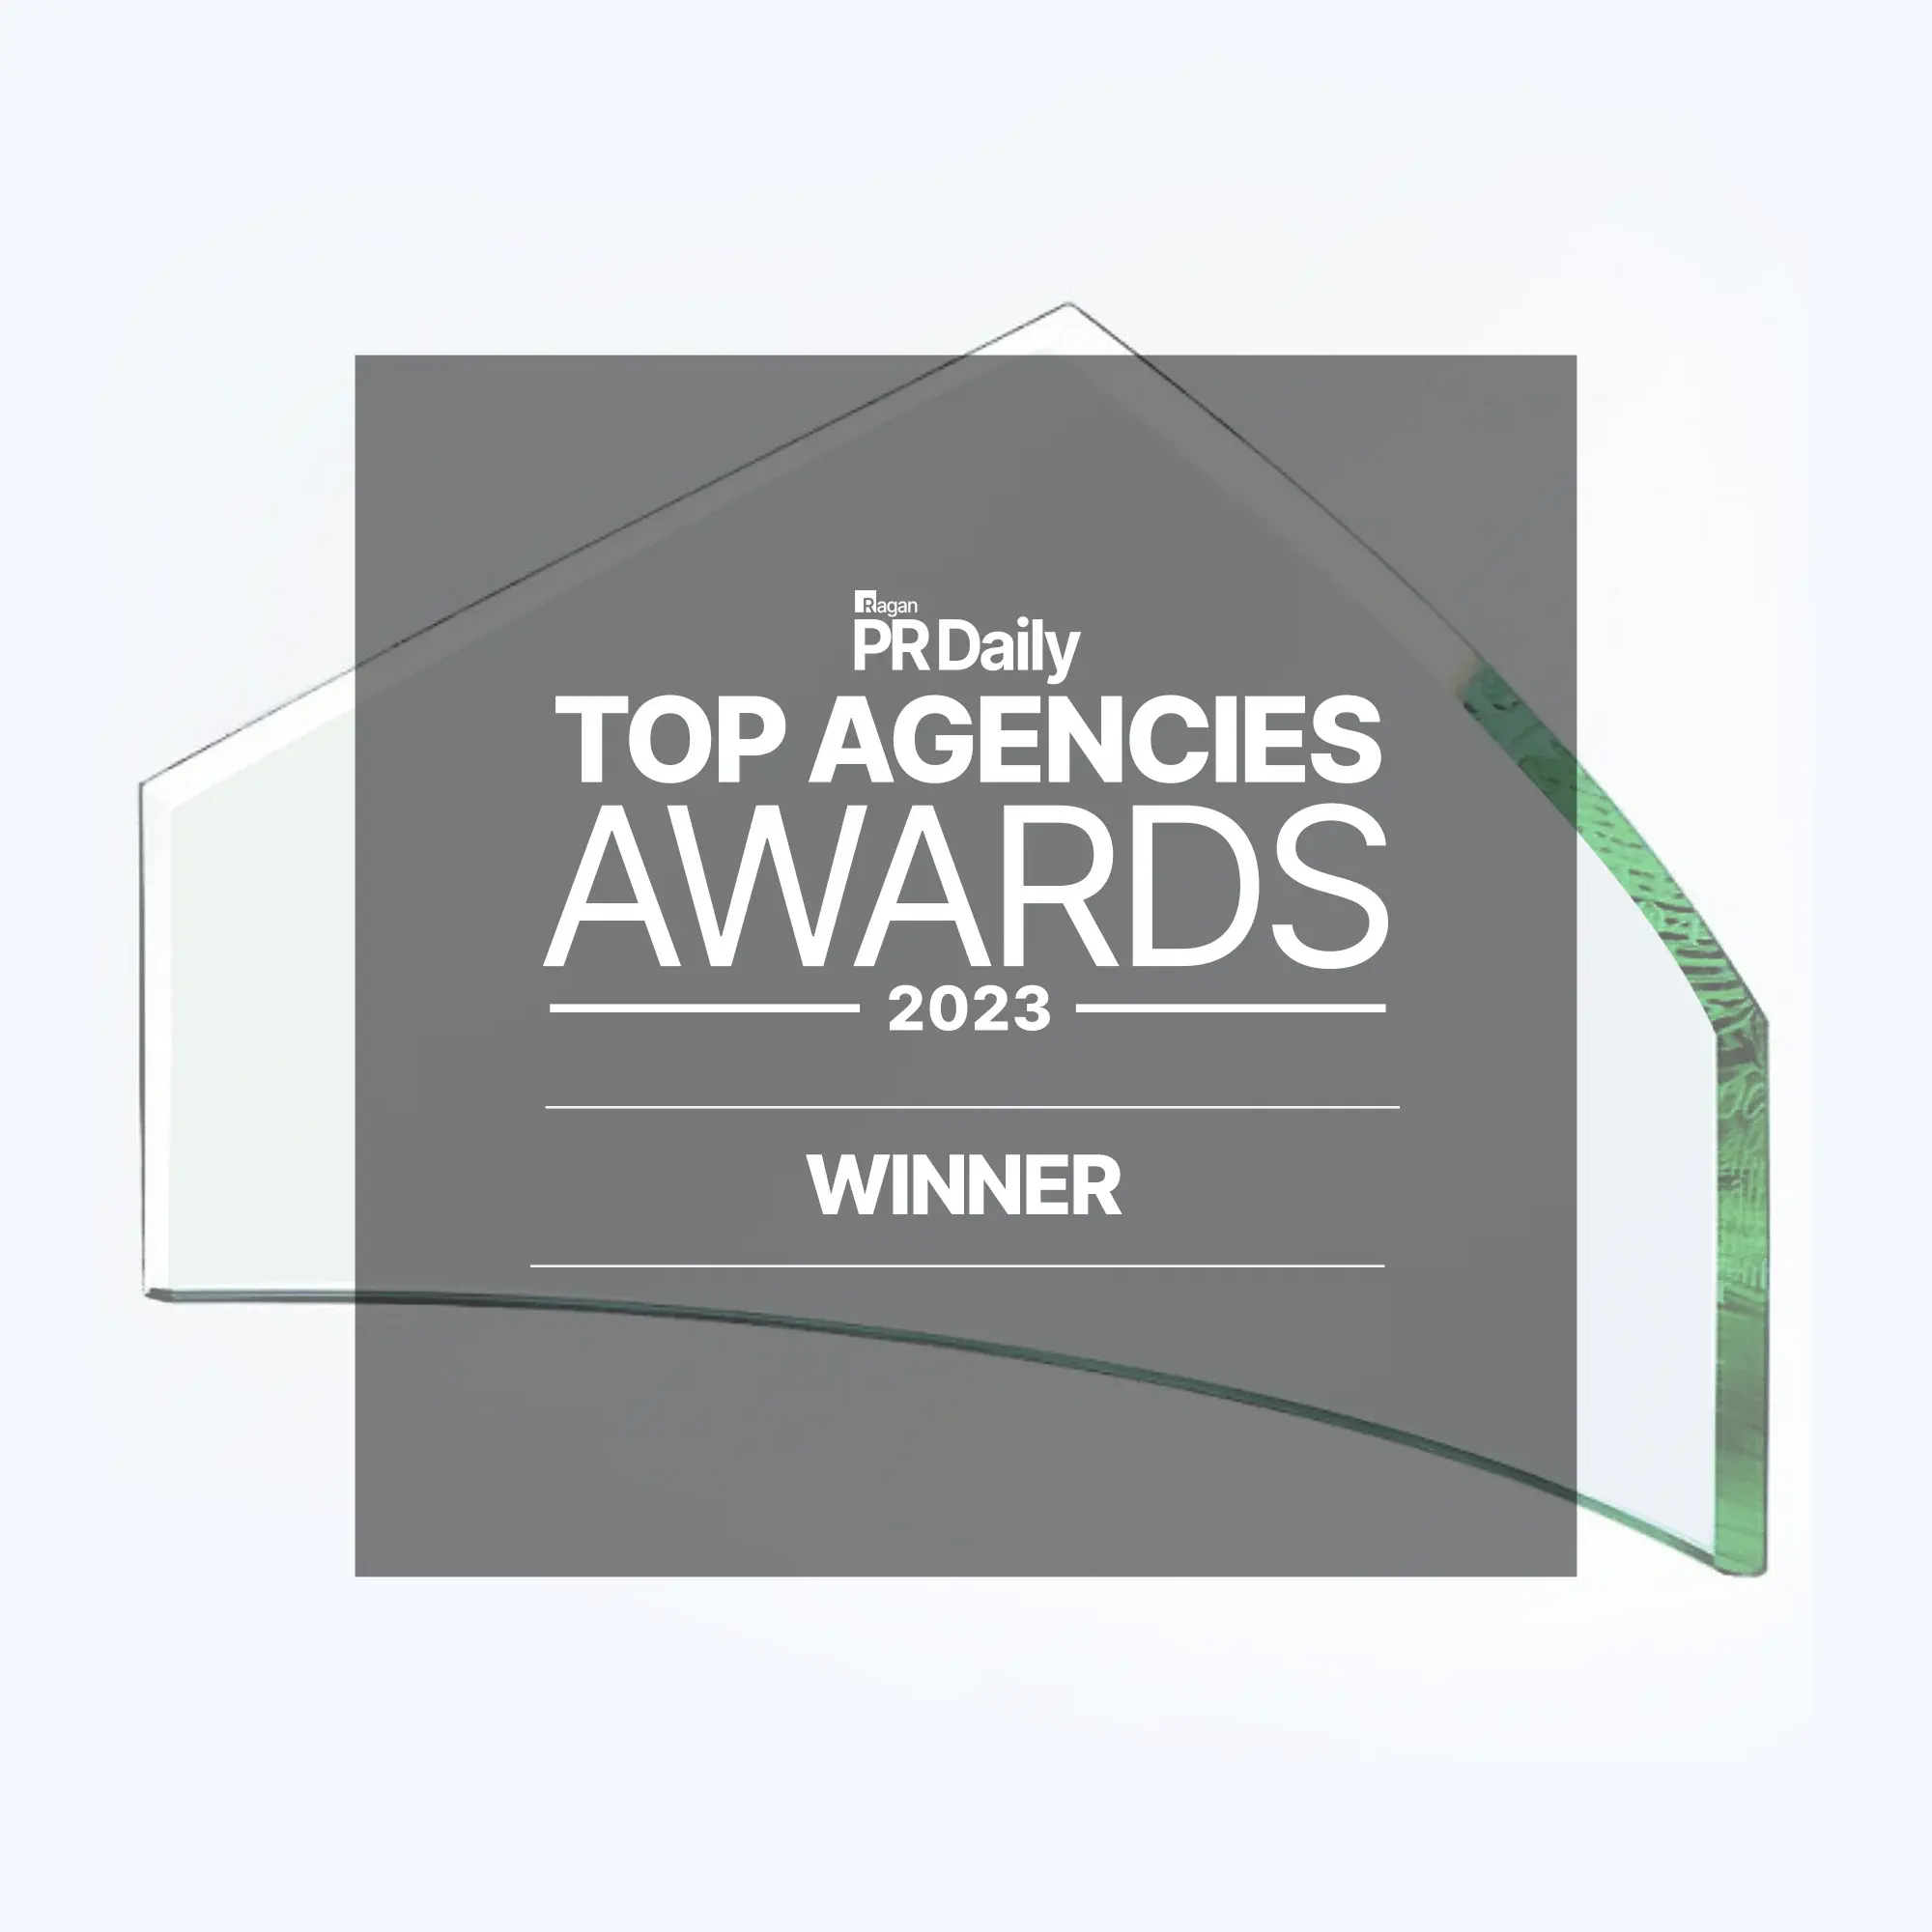 Ragan PR Daily Top Agencies Awards